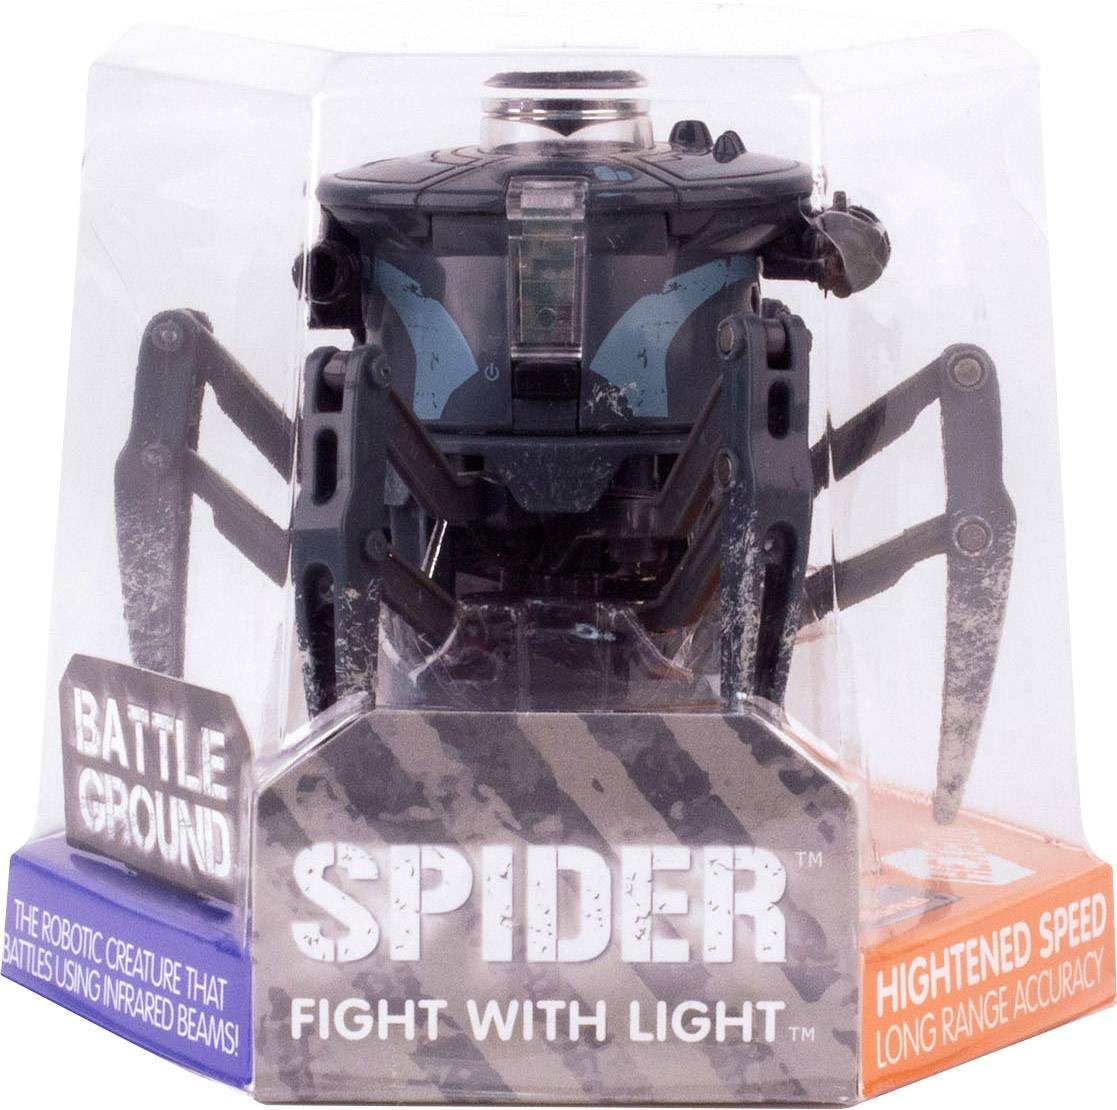 download hexbug battle spider